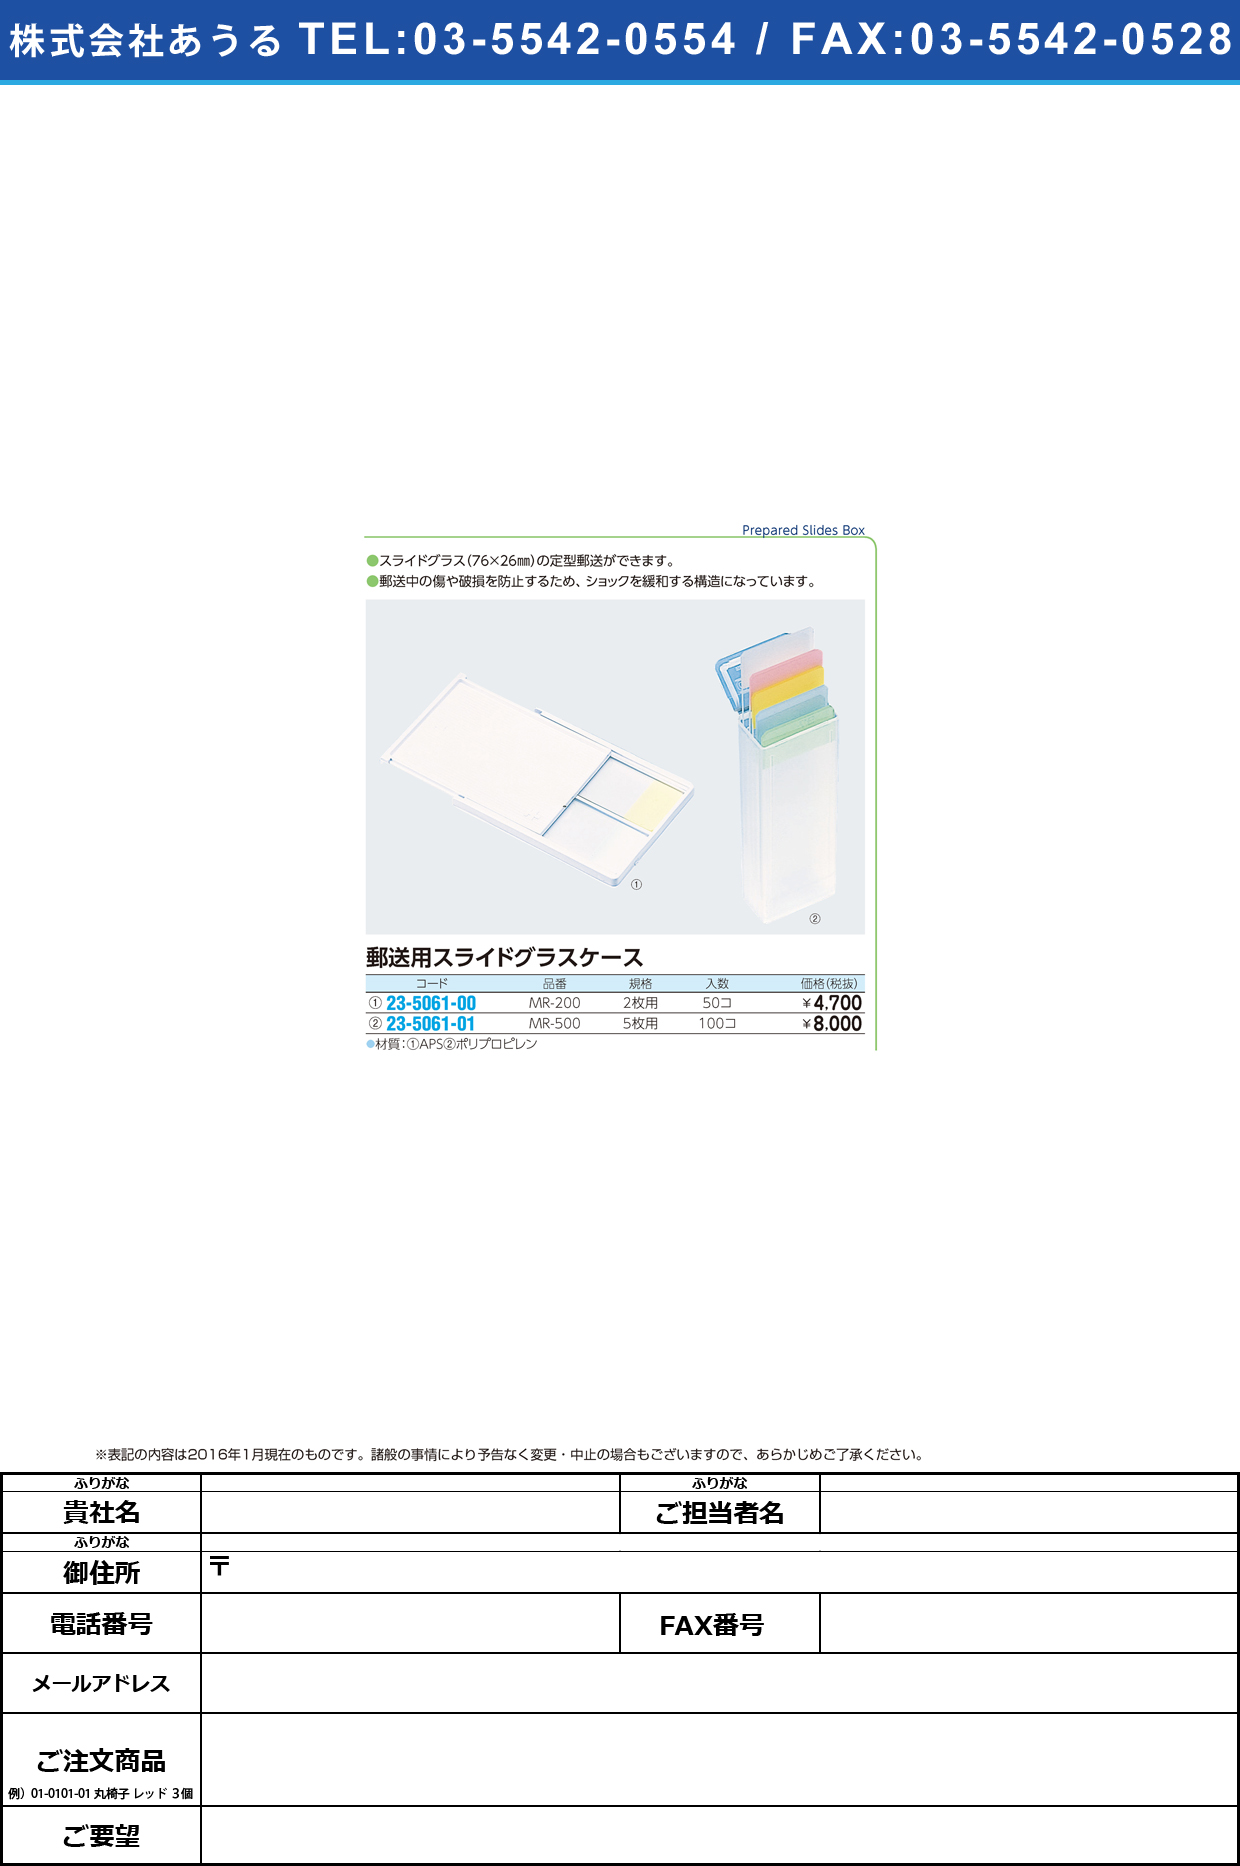 郵送用スライドグラスケース   ﾕｳｿｳﾖｳｽﾗｲﾄﾞｸﾞﾗｽｹｰｽ MR-200(2ﾏｲｲﾘX50ｲﾘ)【1箱単位】(23-5061-00)